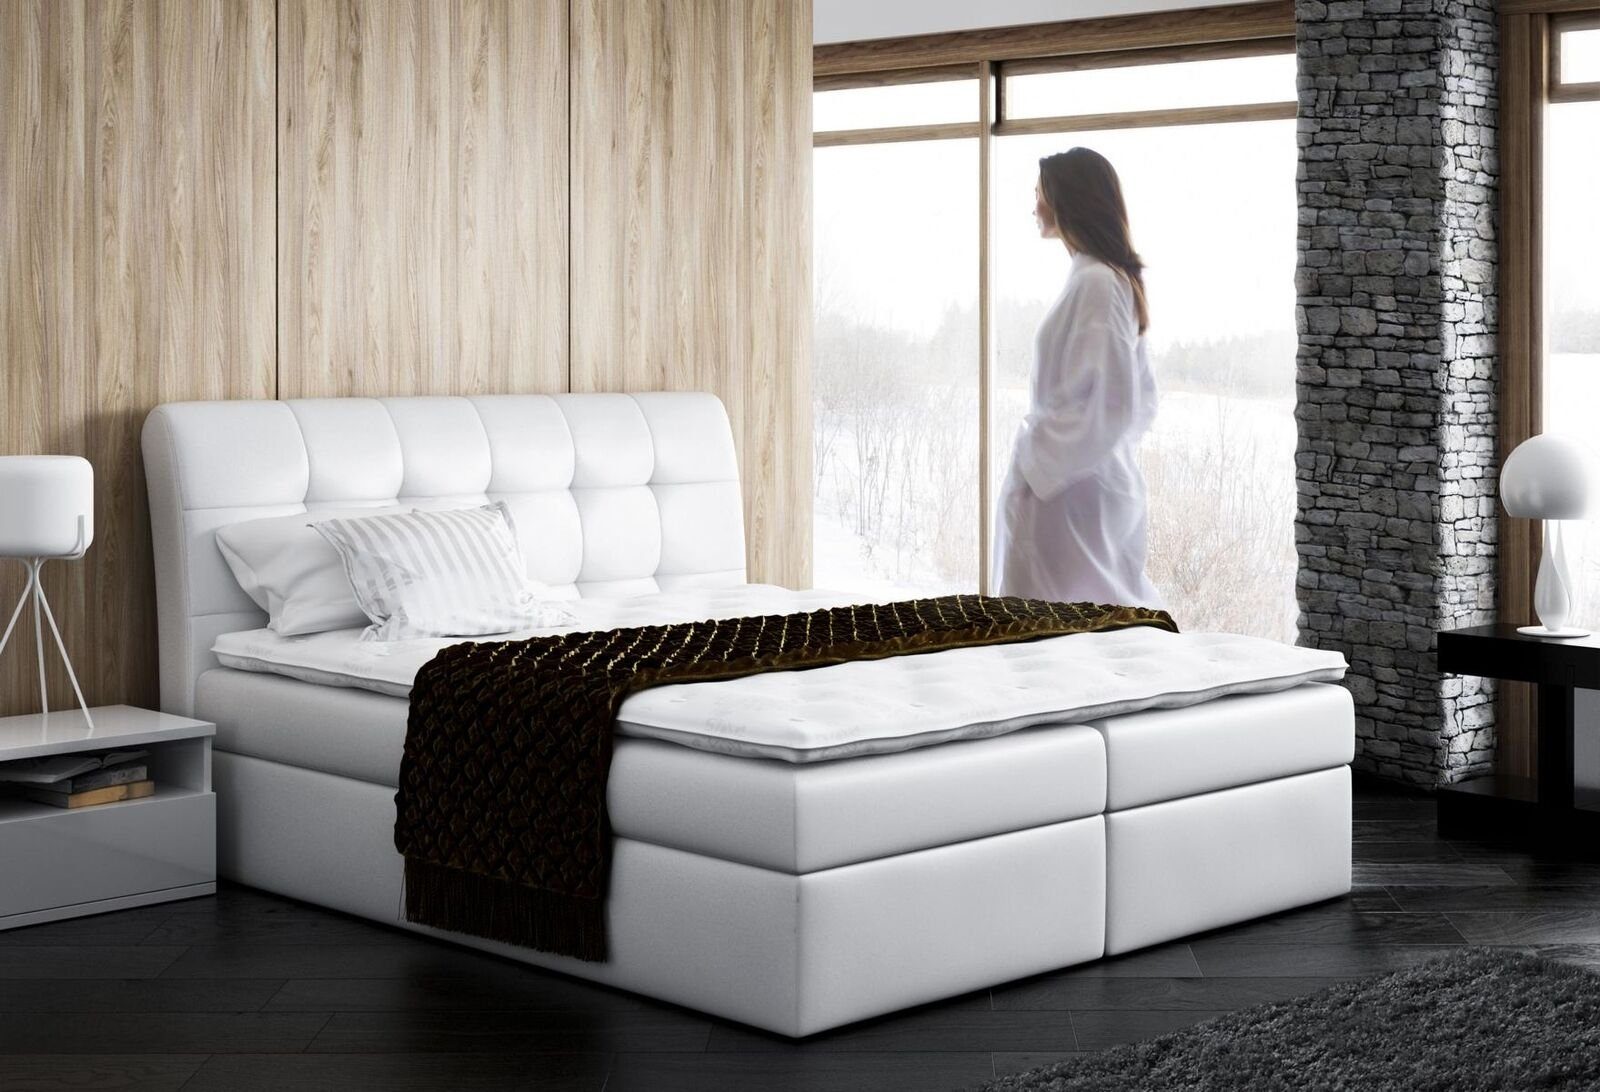 JVmoebel Bett, Design Schlafzimmer Doppel Betten Modern Weiß Polsterbett Hotel Bett